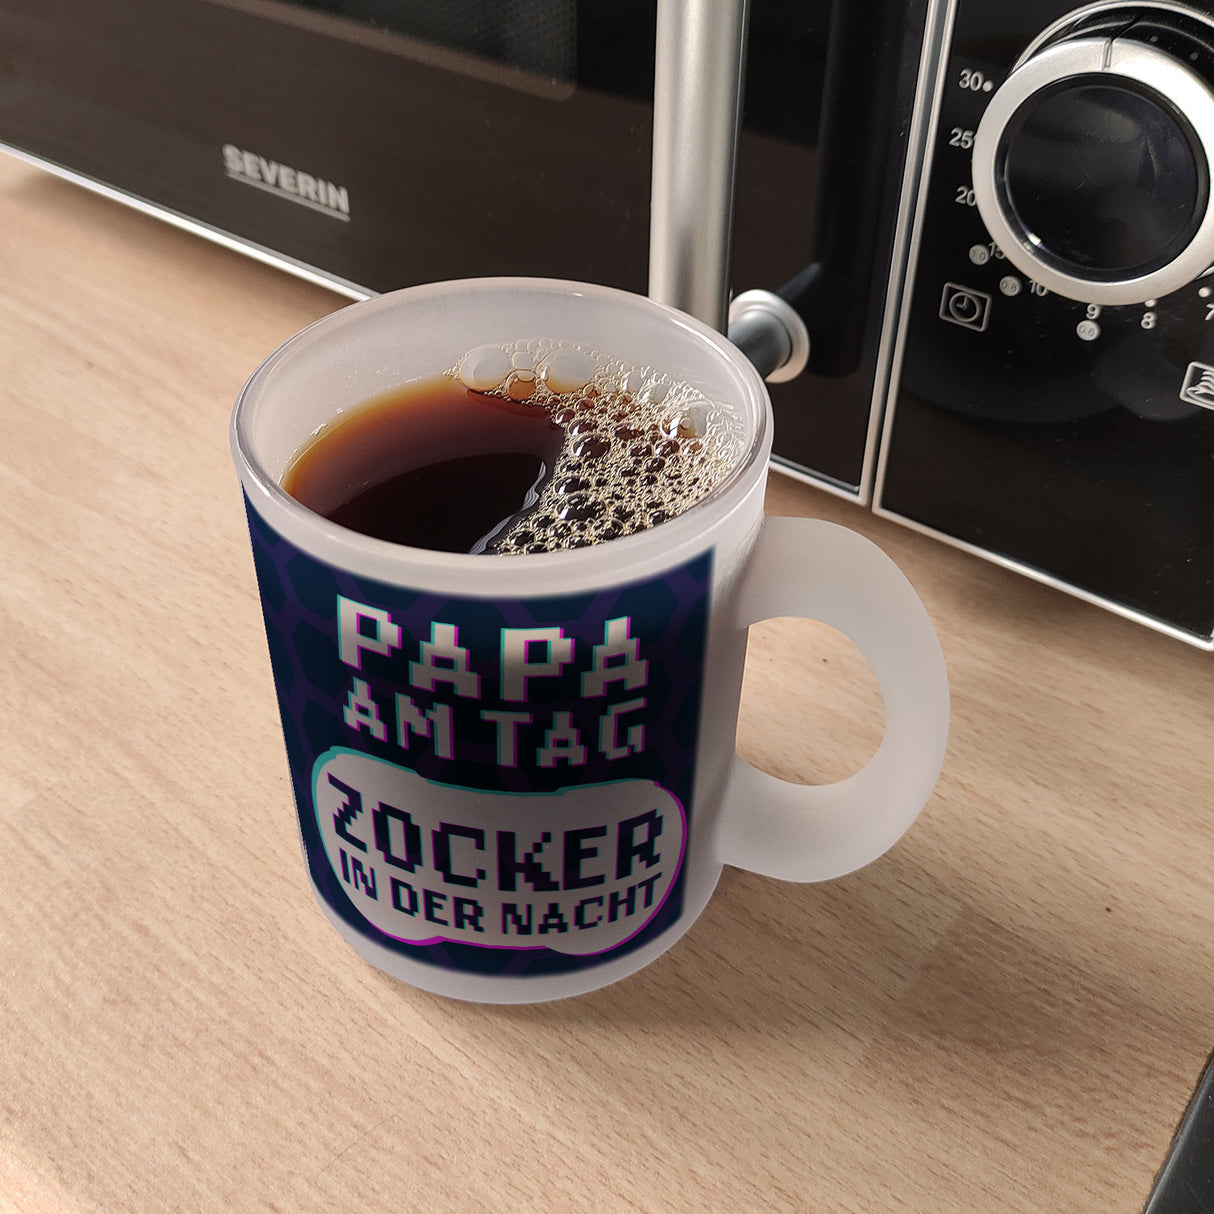 Papa am Tag - Zocker in der Nacht Kaffeebecher für Gamer und Väter